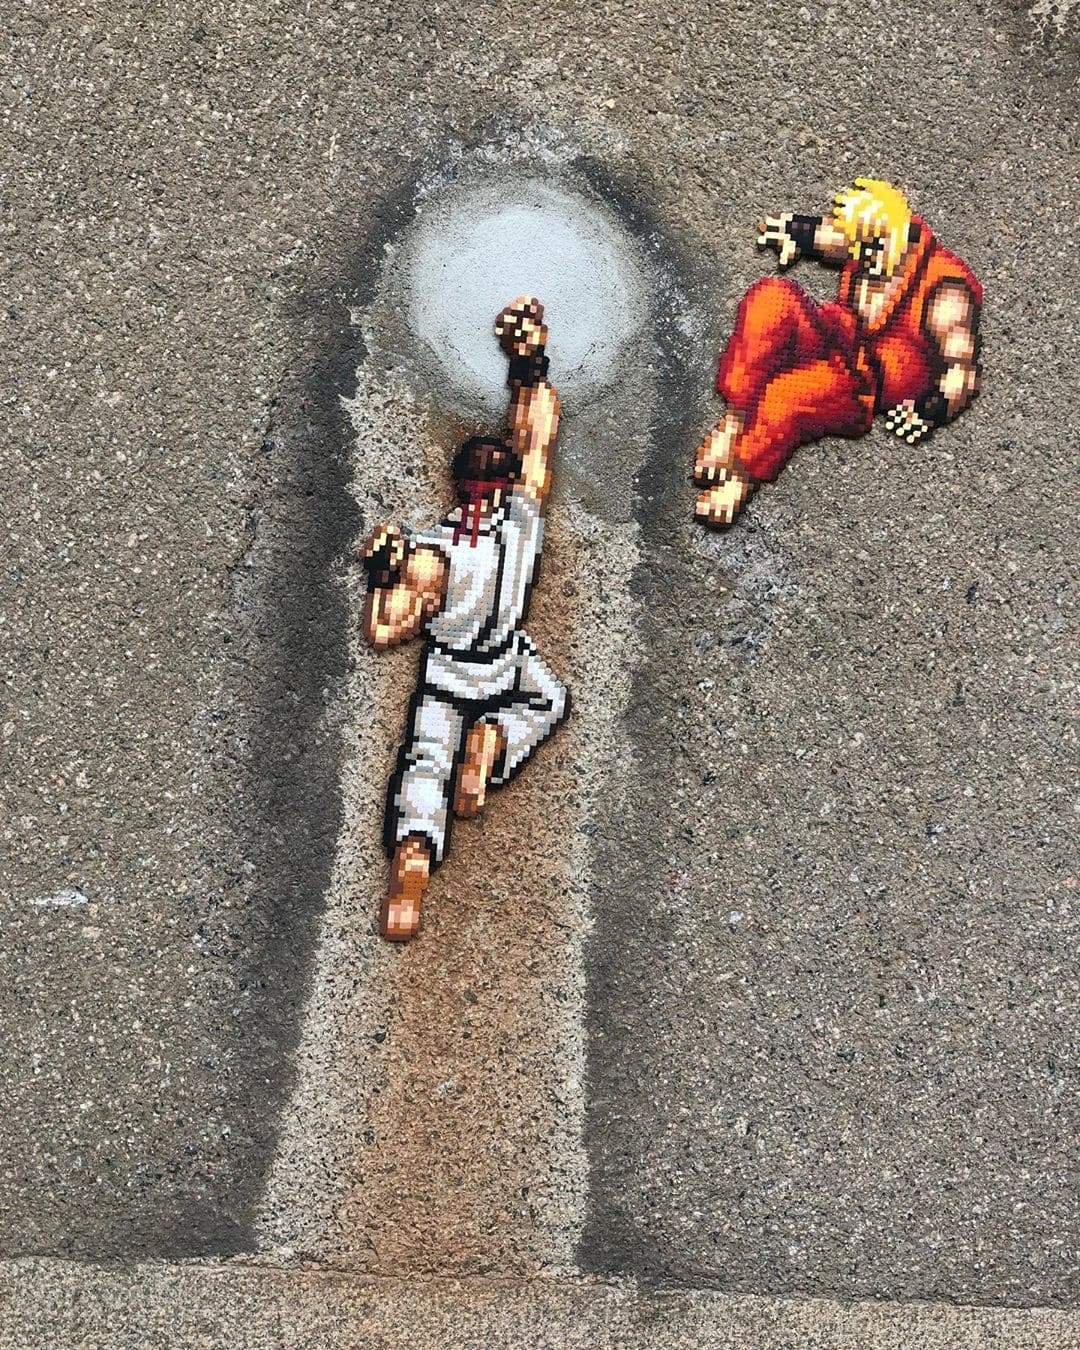 dragon ballz street art marrant efix